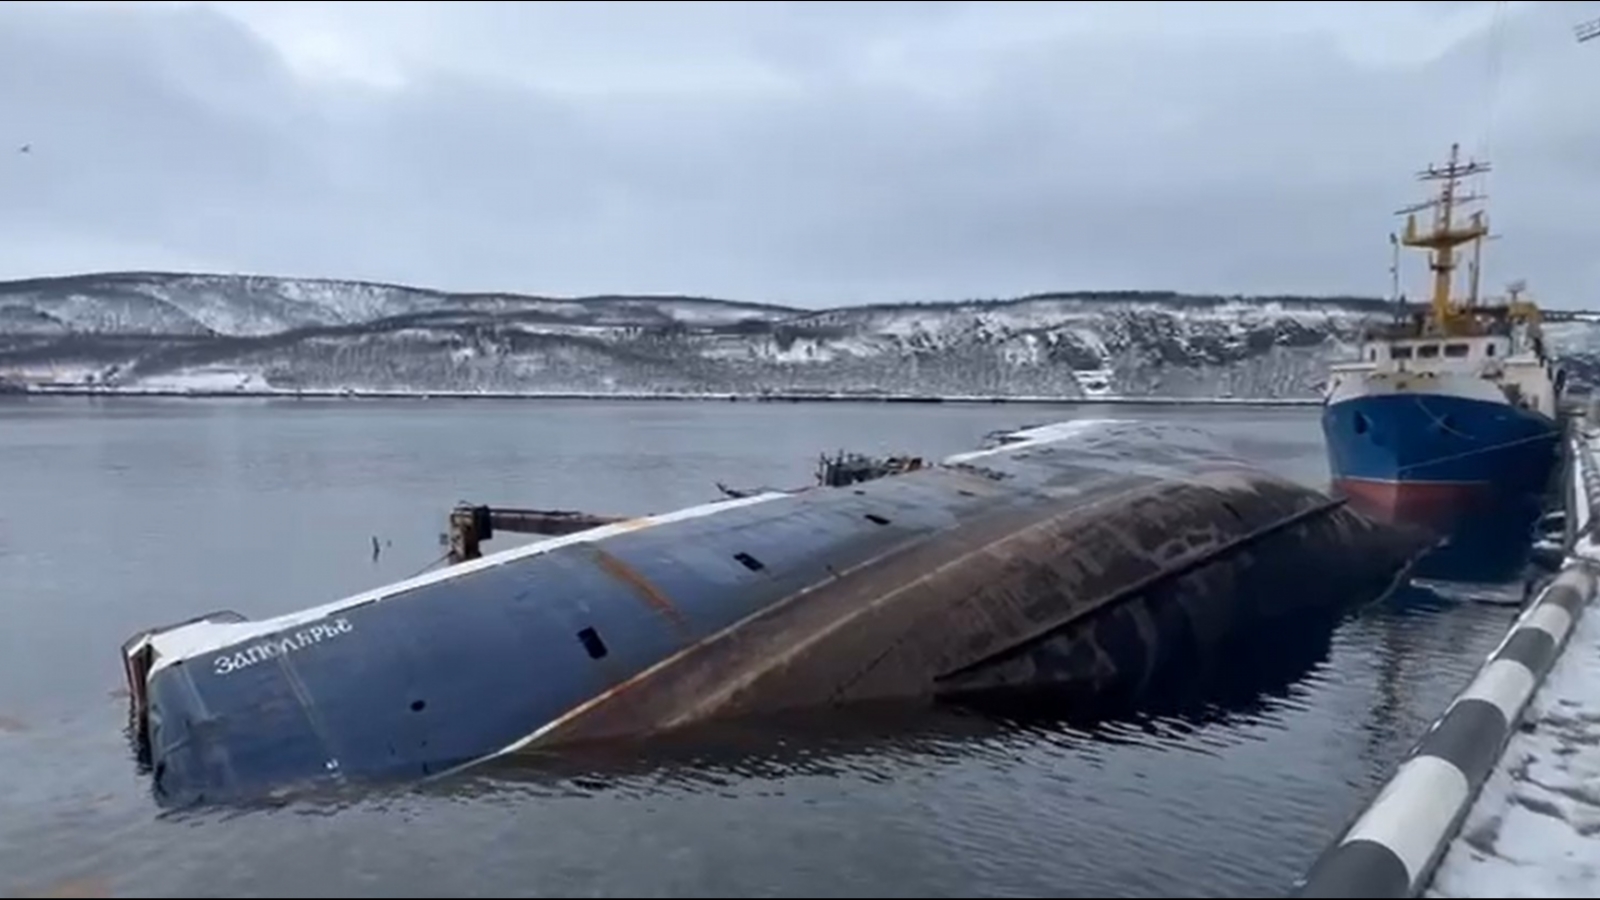 Транспортная прокуратура проводит проверку подтопления судна в Мурманске [видео]